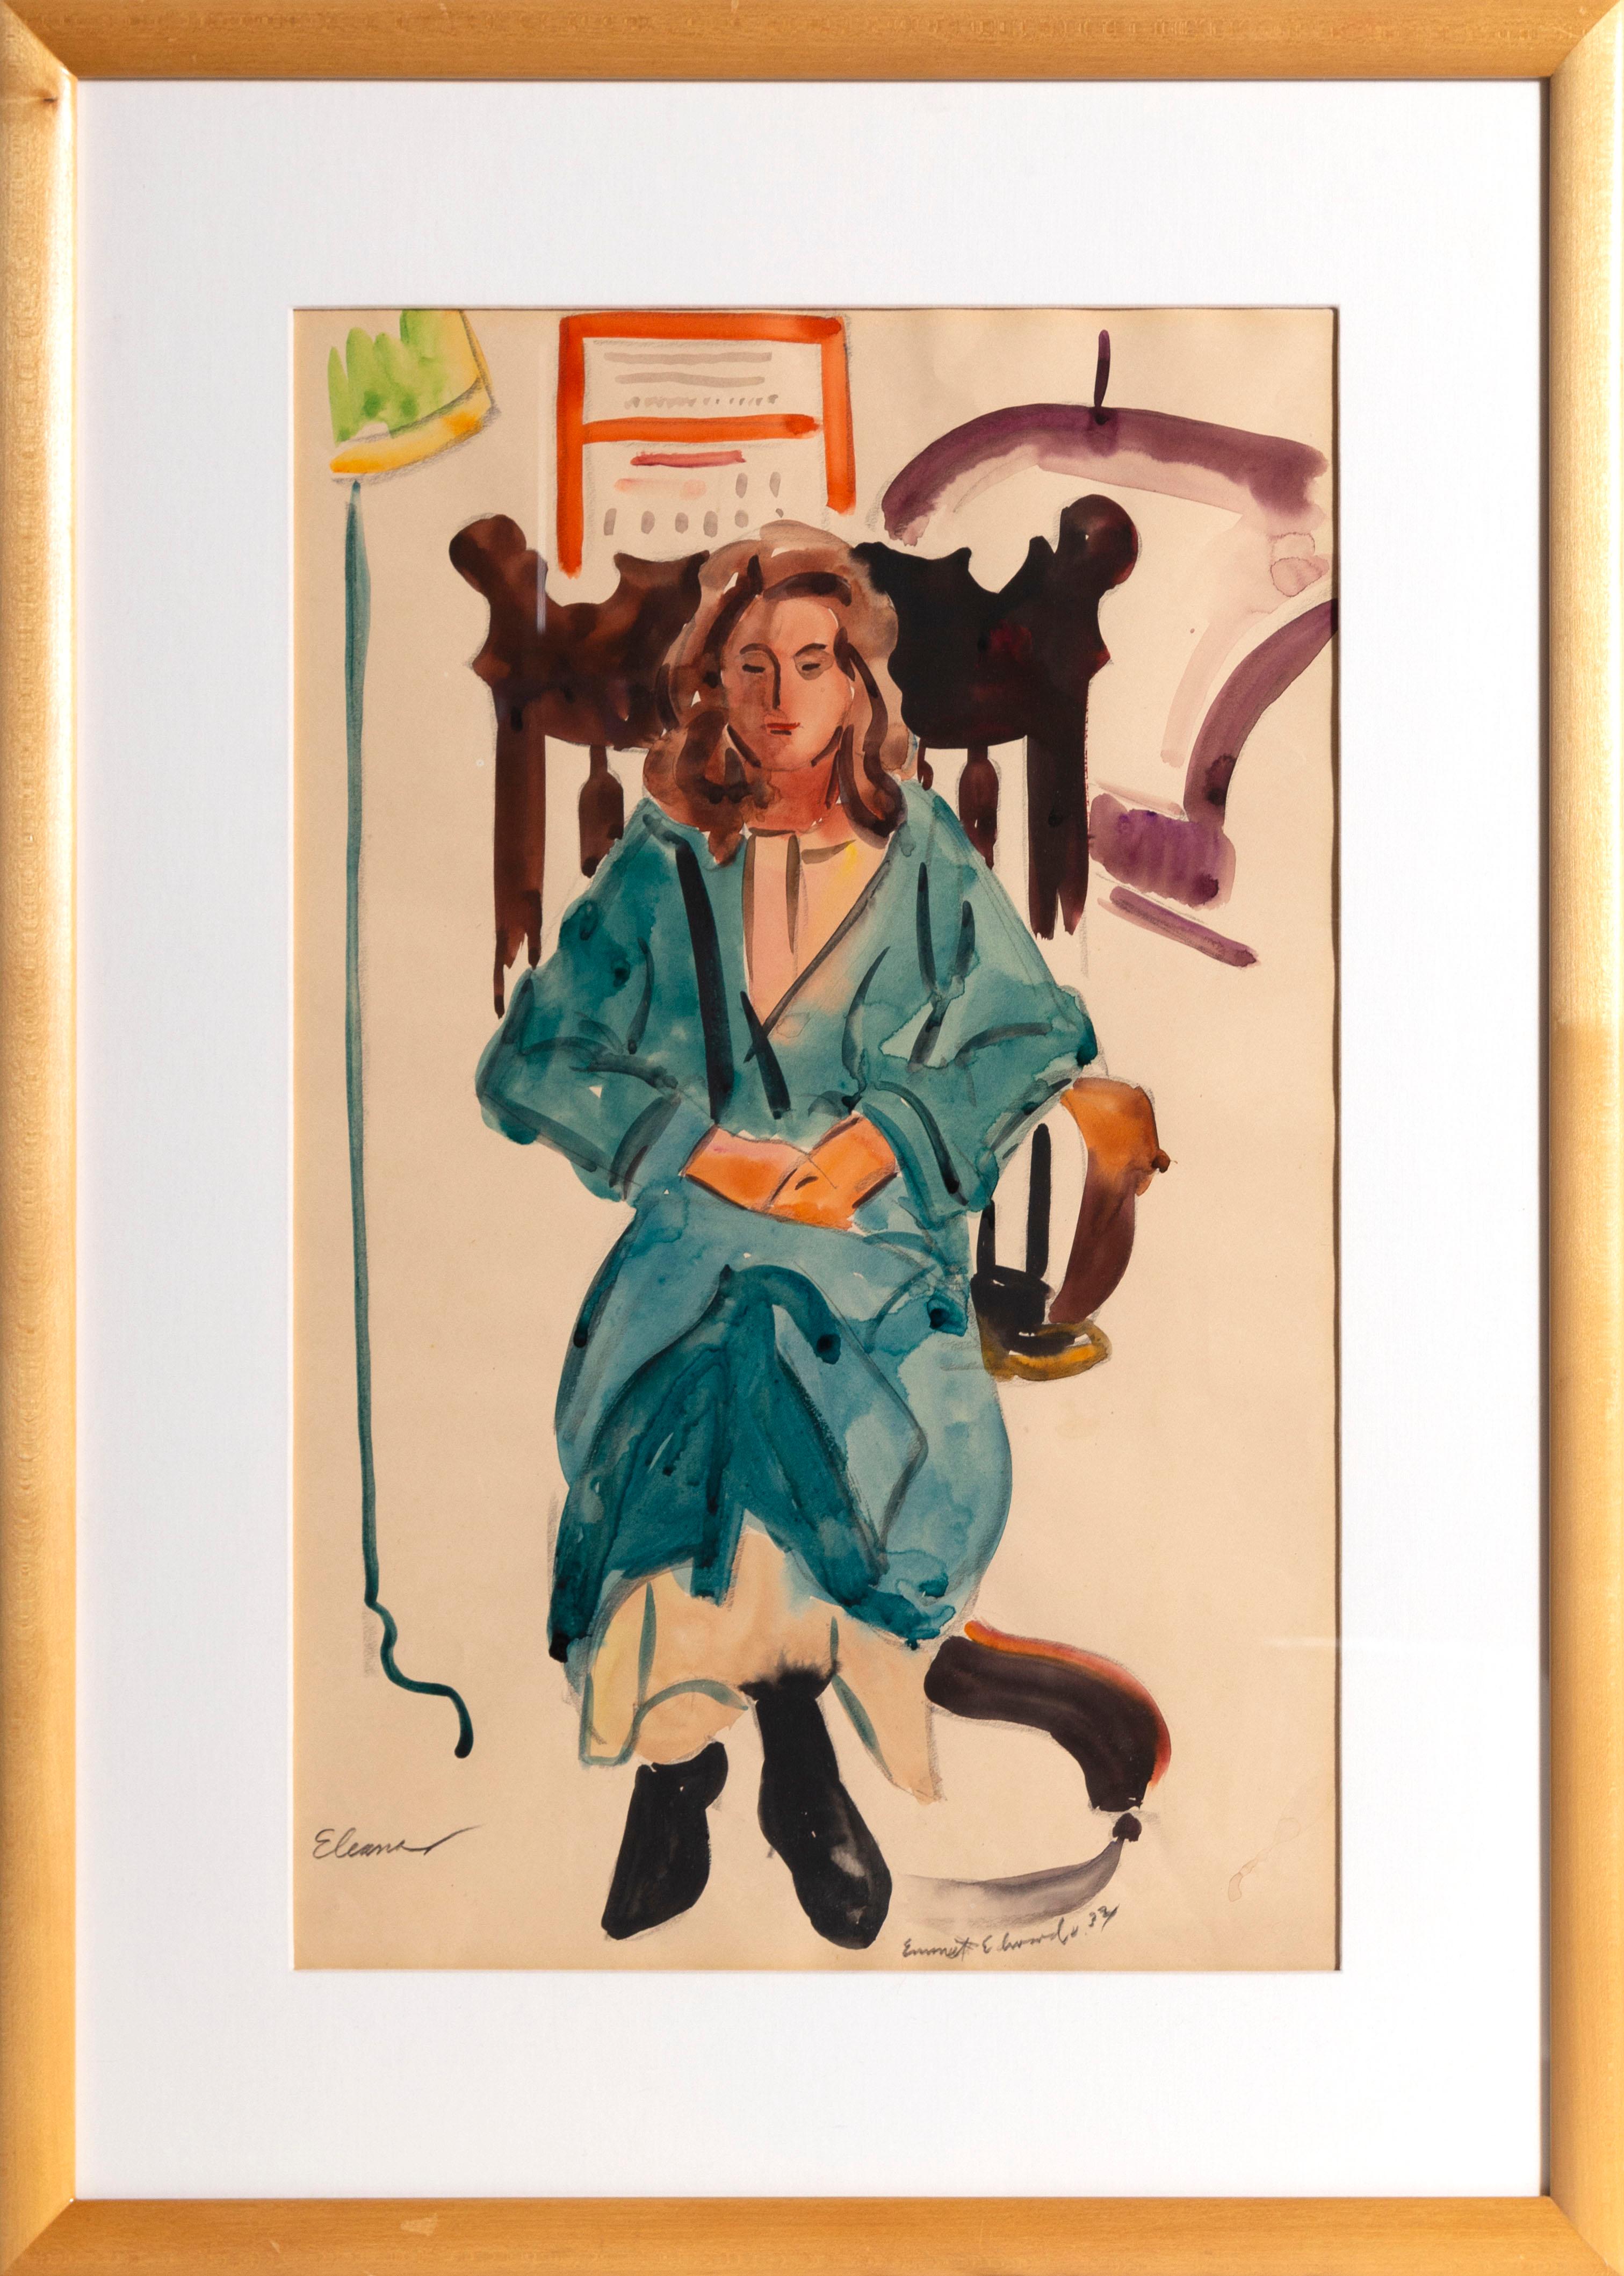 Künstler: Emmet Edwards
Titel: Eleanor
Medium: Aquarell auf Papier, mit Bleistift signiert, datiert und betitelt
Bildgröße: 21 x 14 Zoll
Rahmengröße: 28,5 x 21,5 Zoll